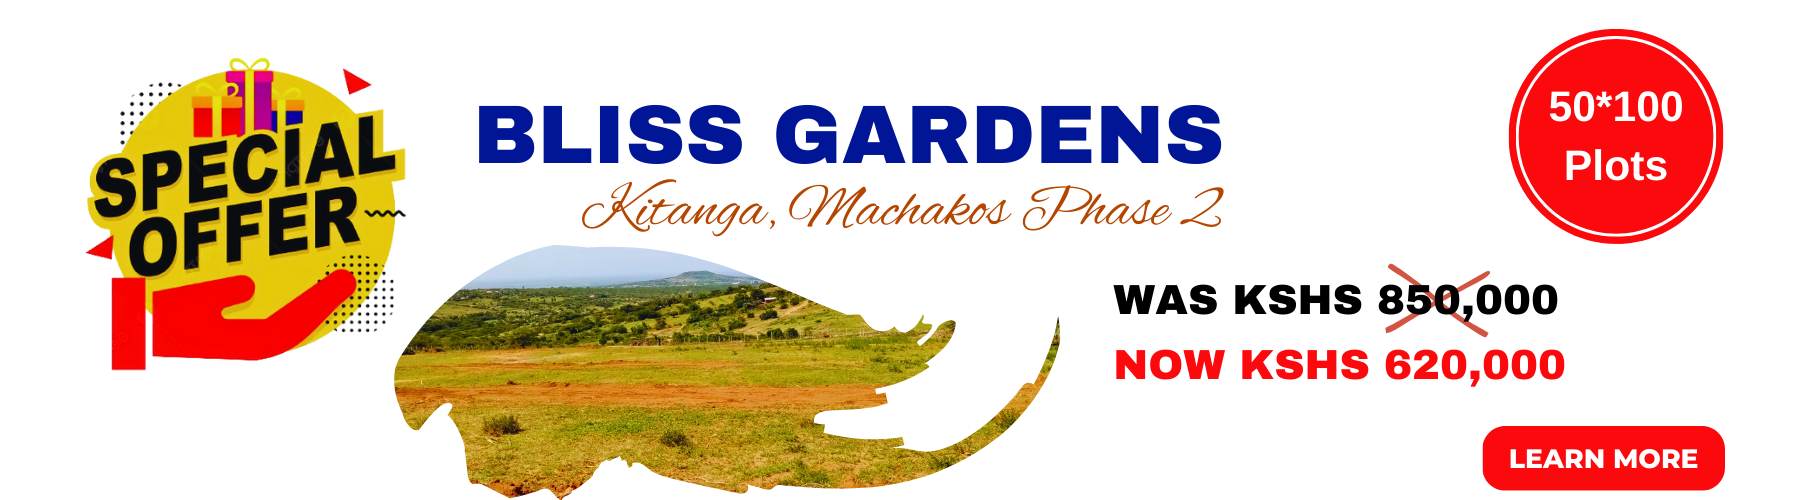 Mhasibu_Bliss_Gardens_2_Offers